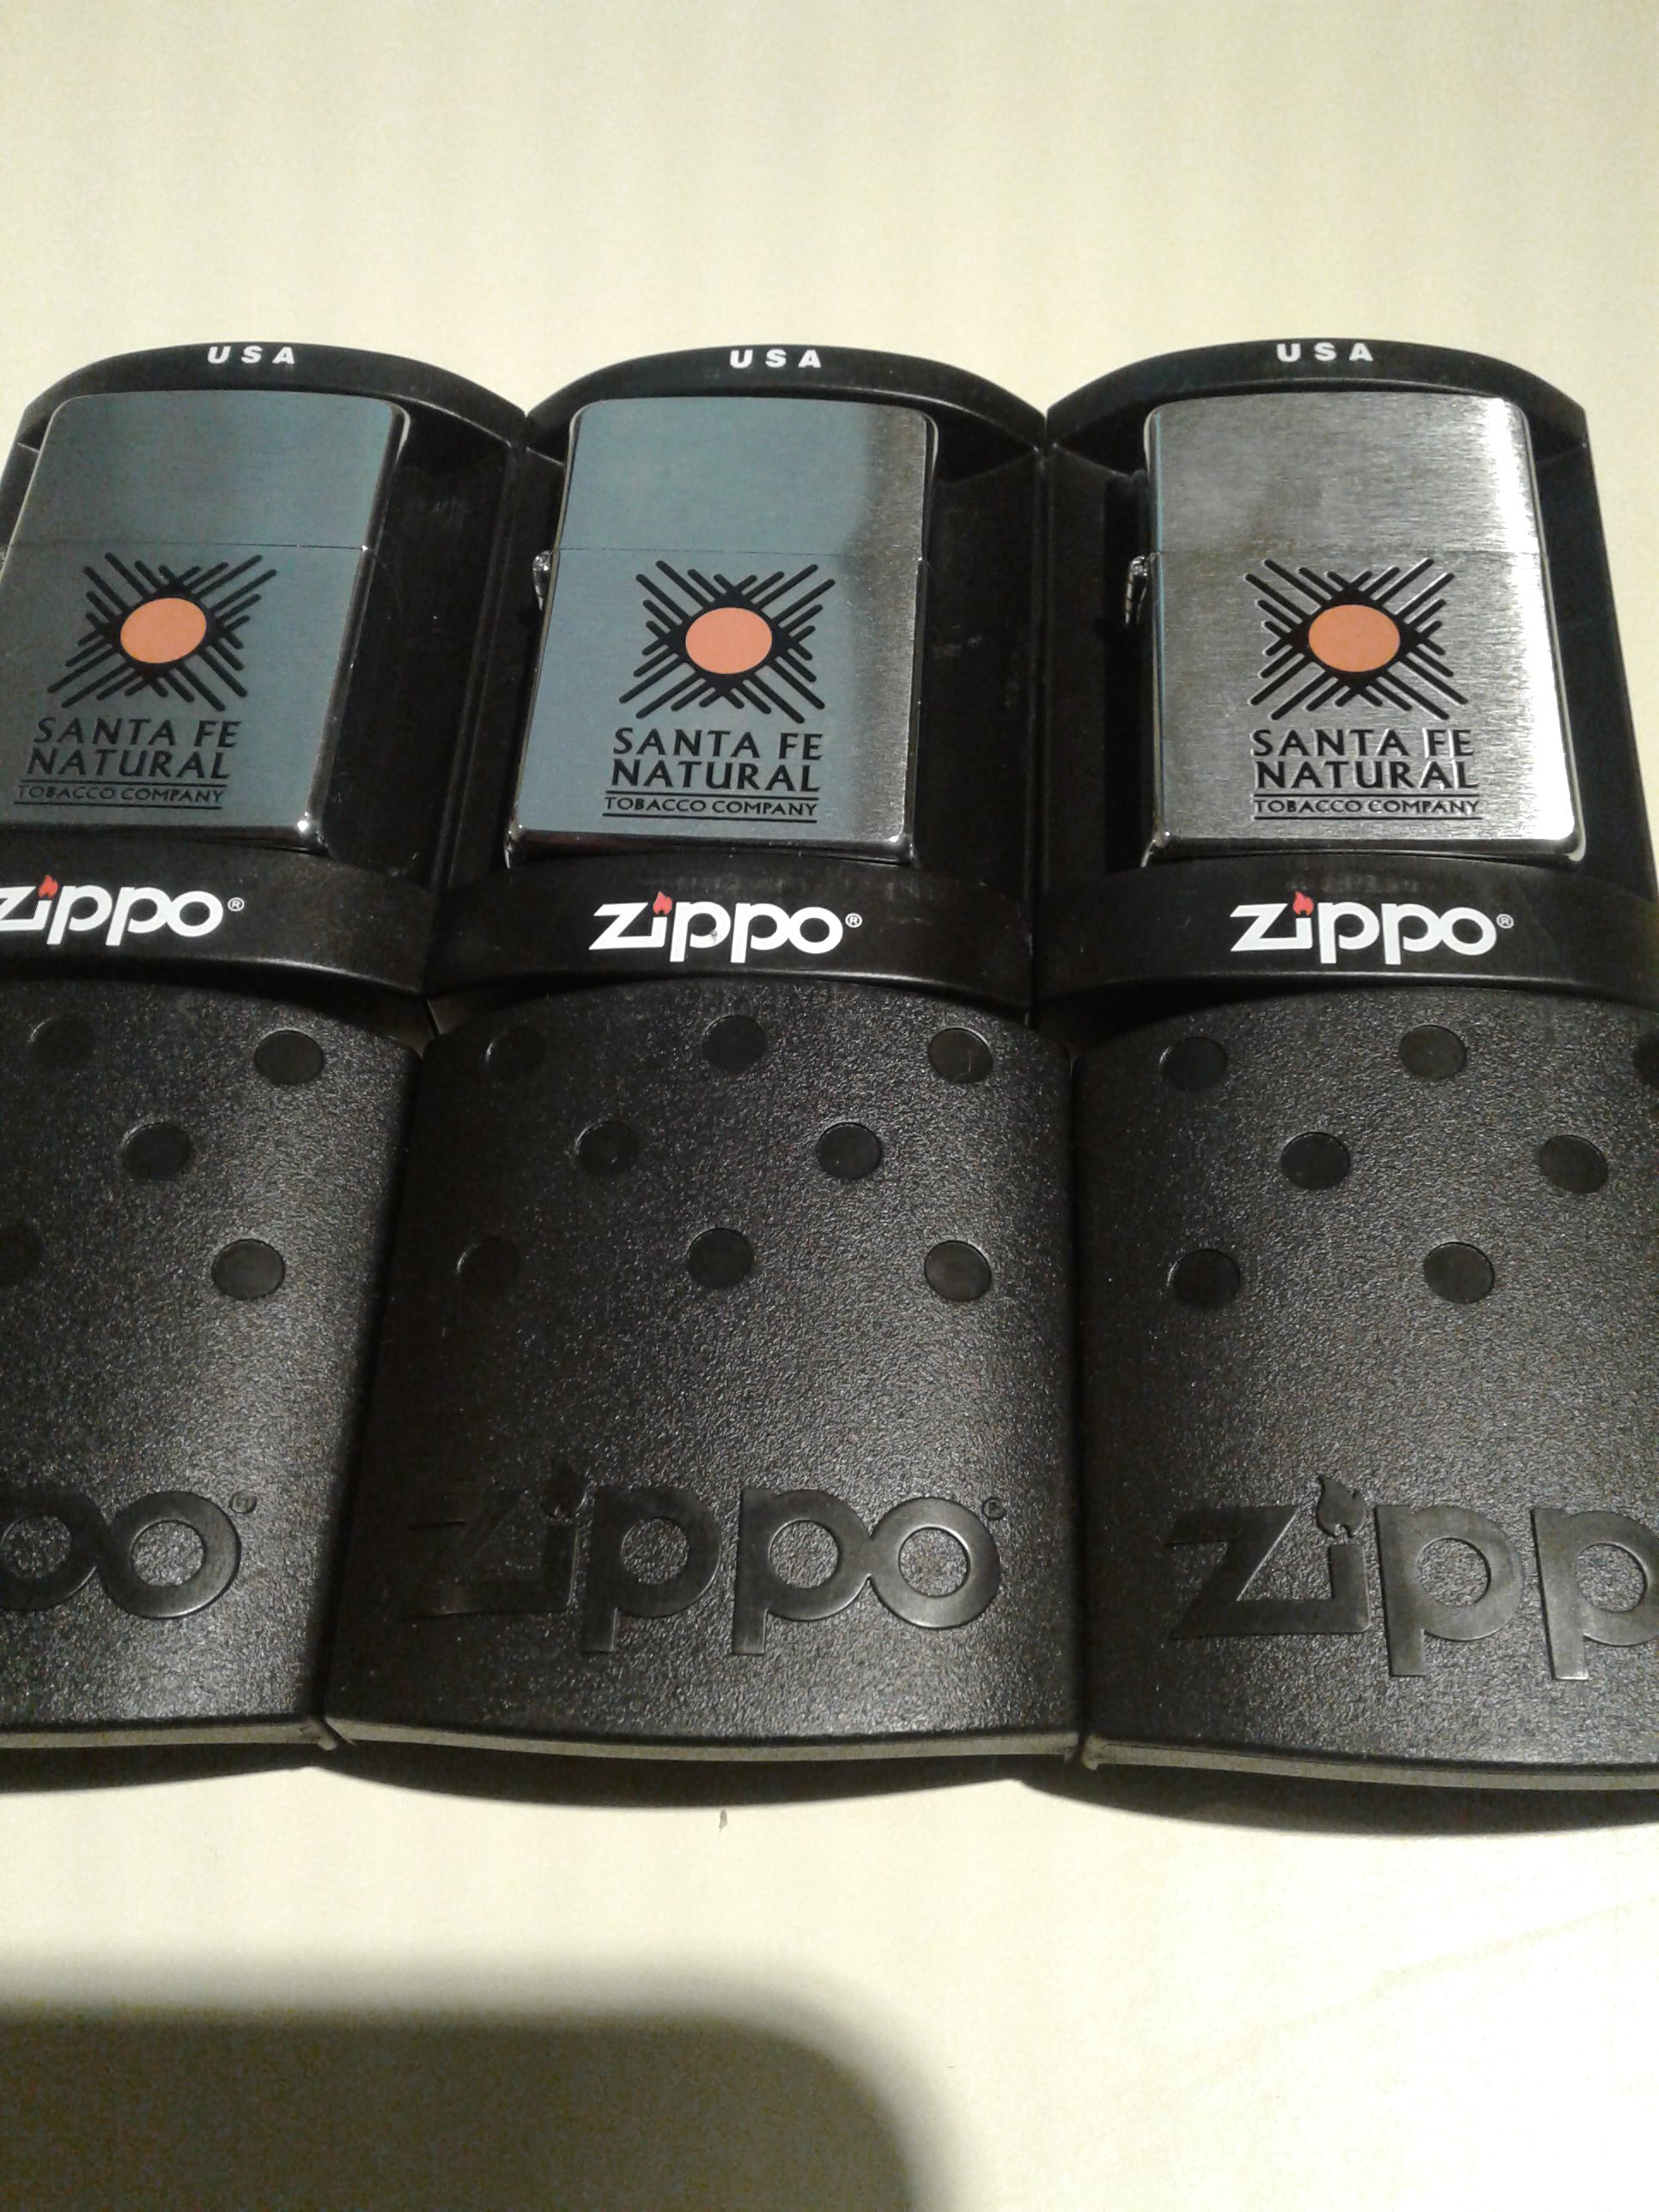 Zippo lighter new in box